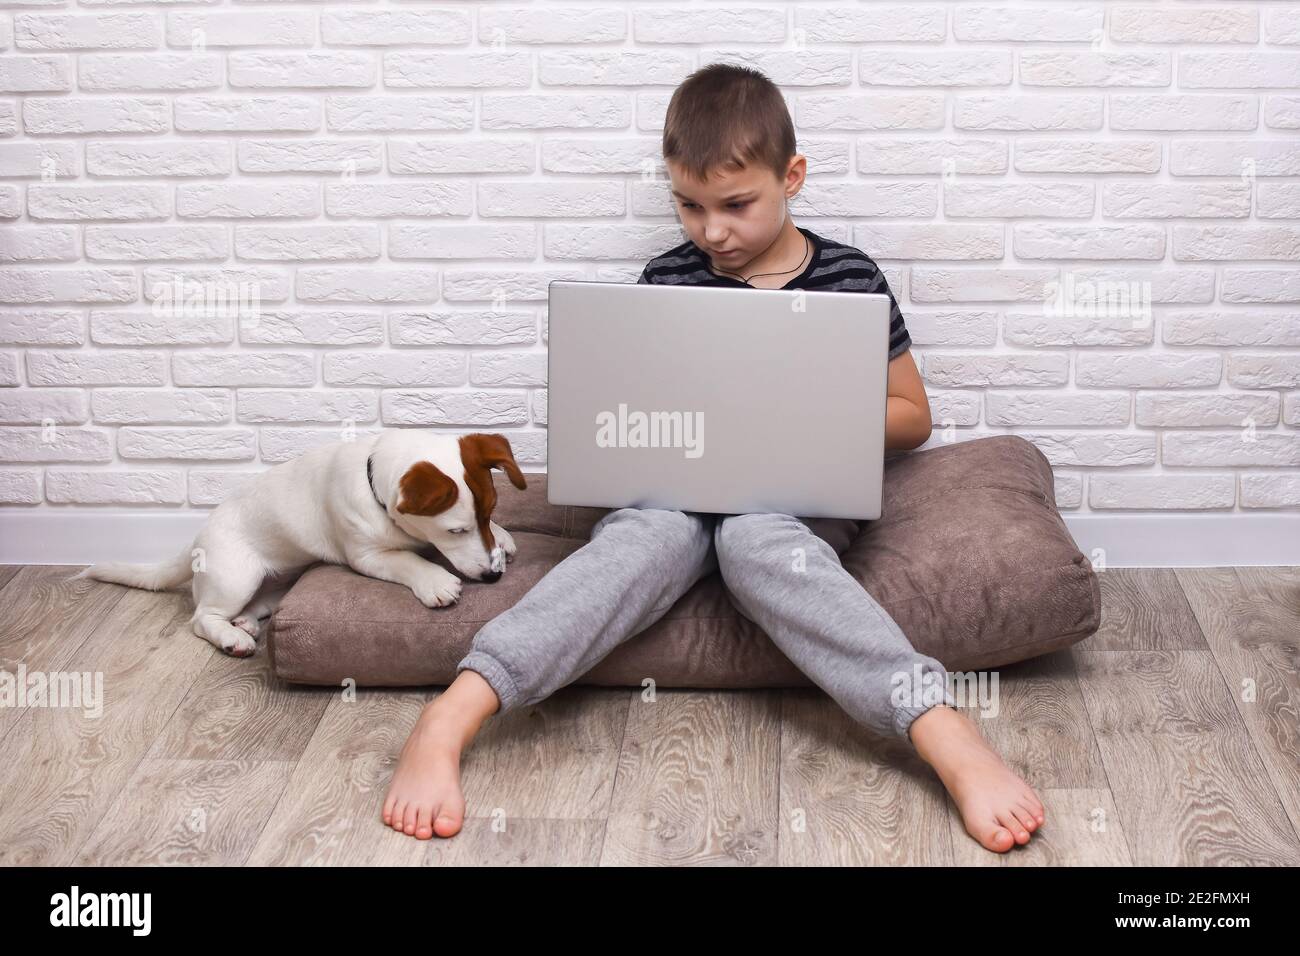 Un garçon de 6 à 7 ans est assis à un ordinateur portable. Un chien Jack Russell Terrier joue à proximité. Contre un mur de briques. Banque D'Images